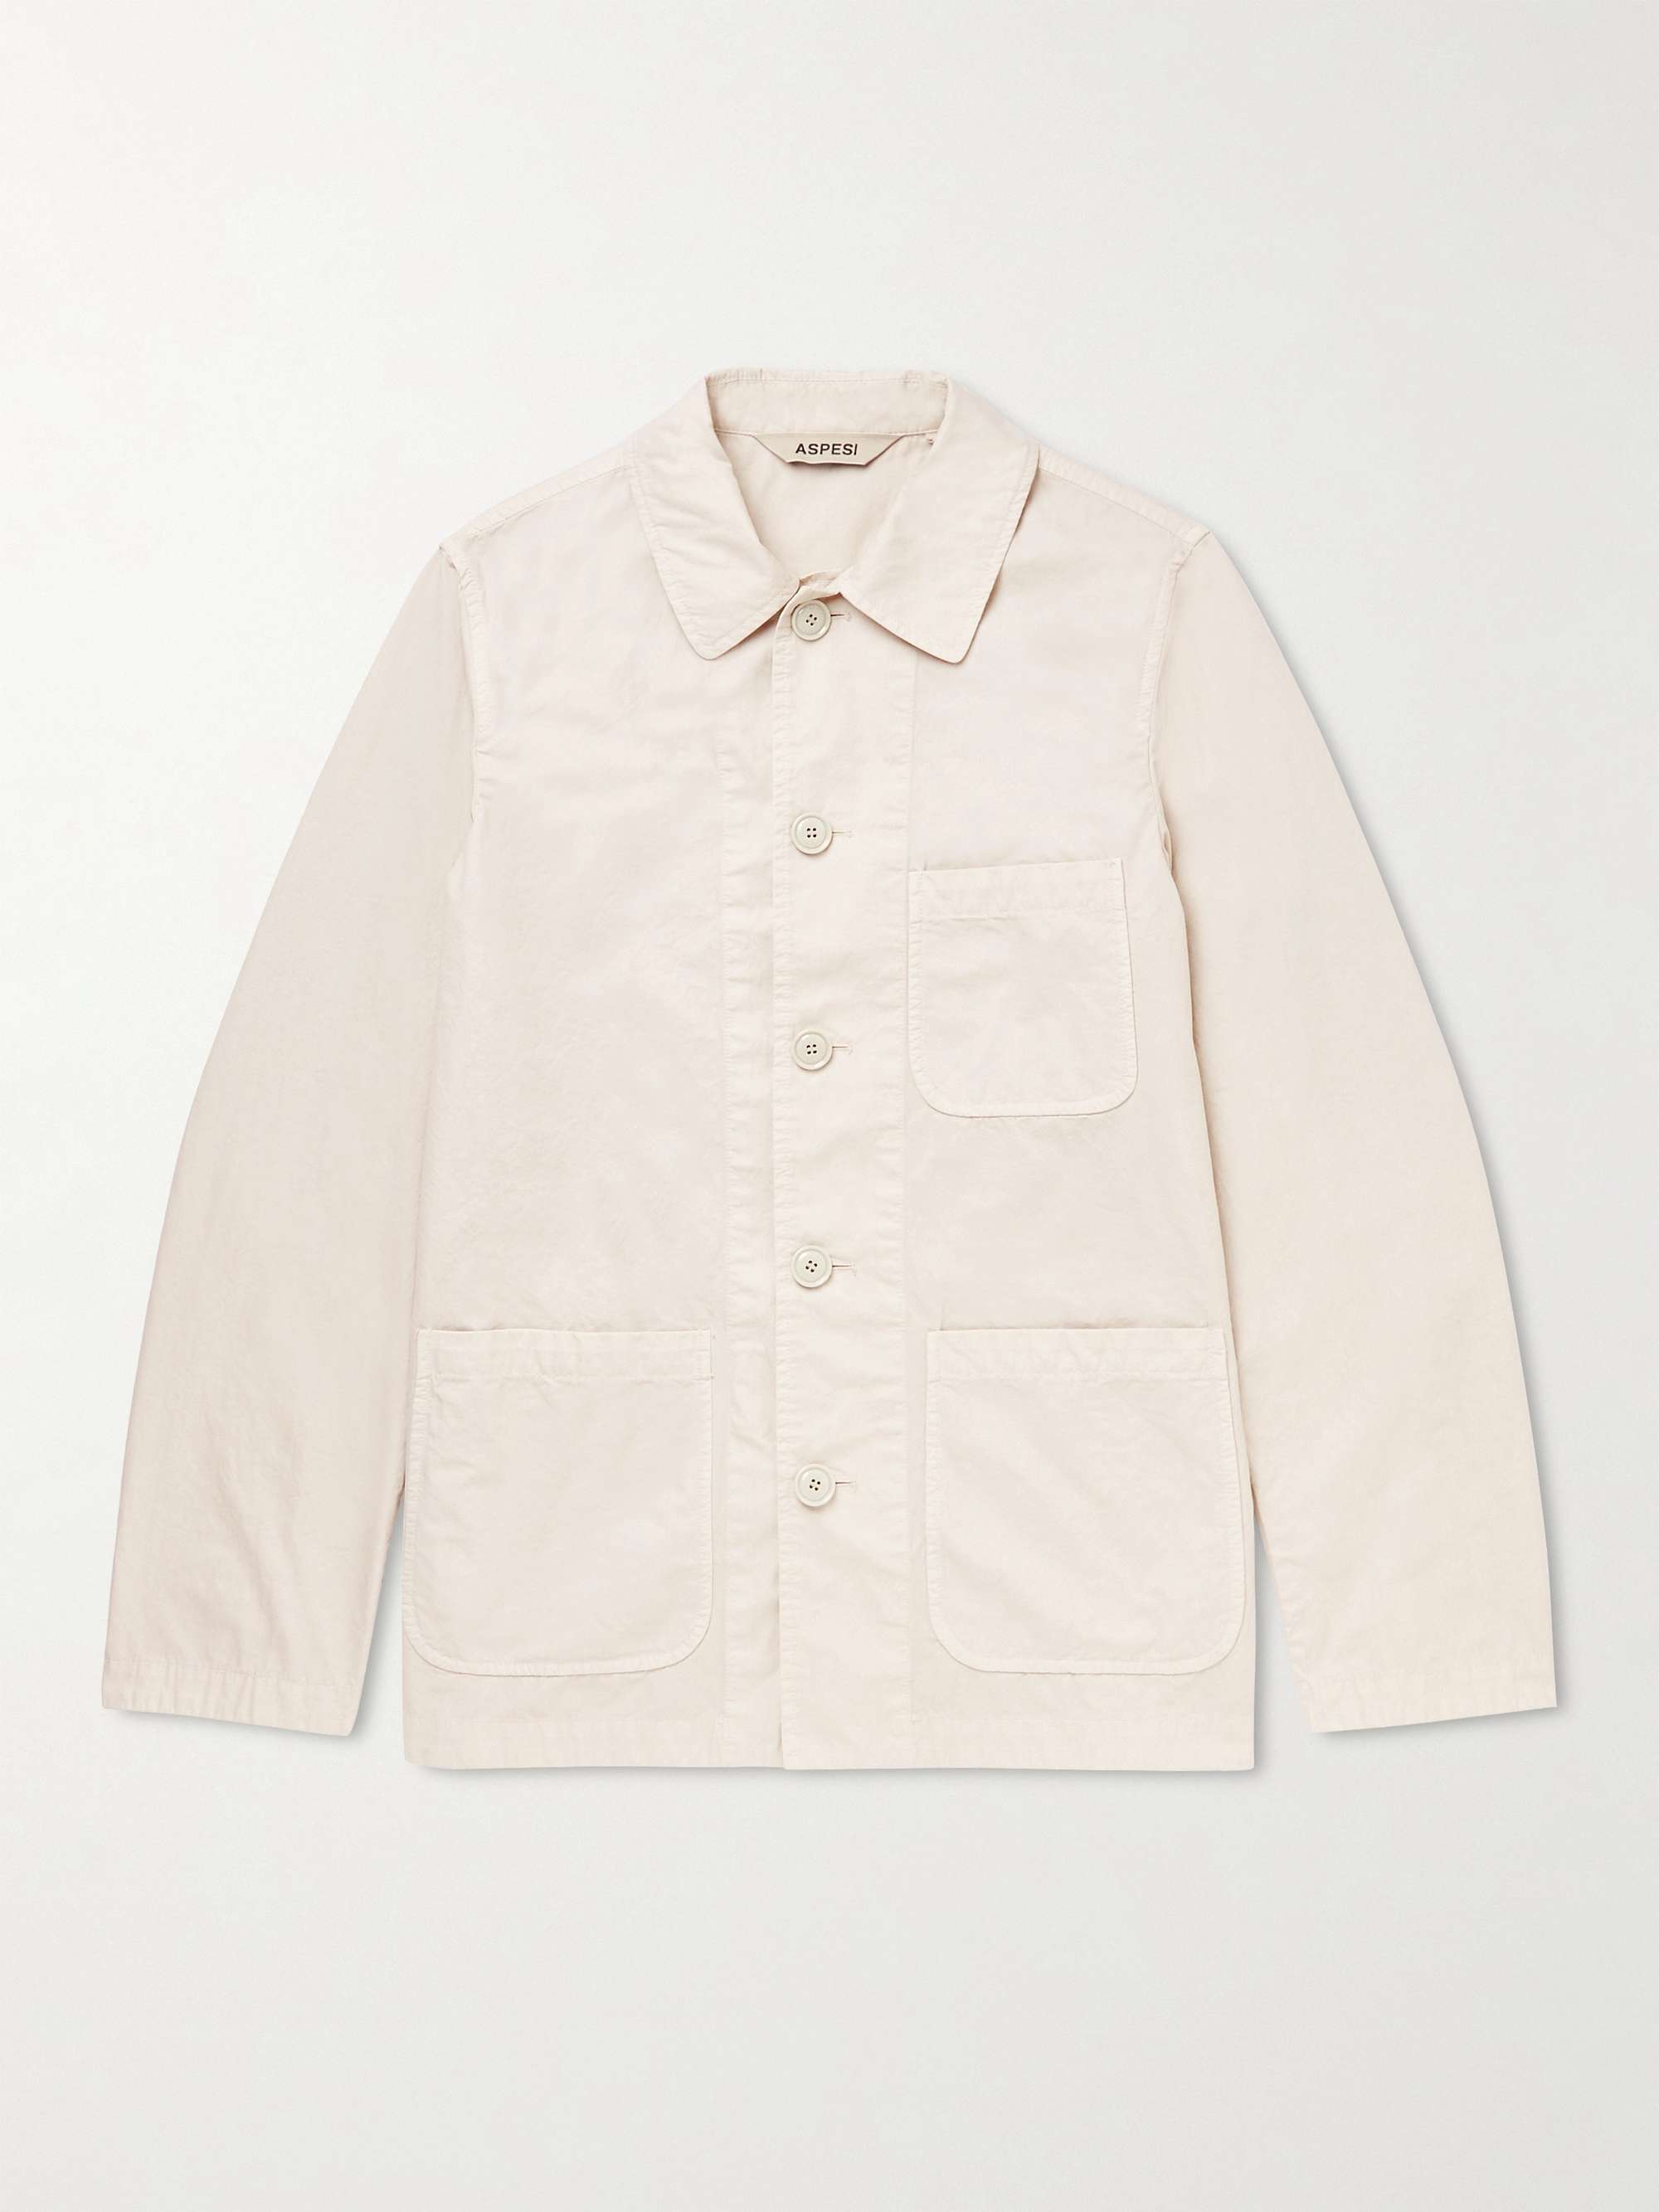 ASPESI Garment-Dyed Cotton Jacket for Men | MR PORTER